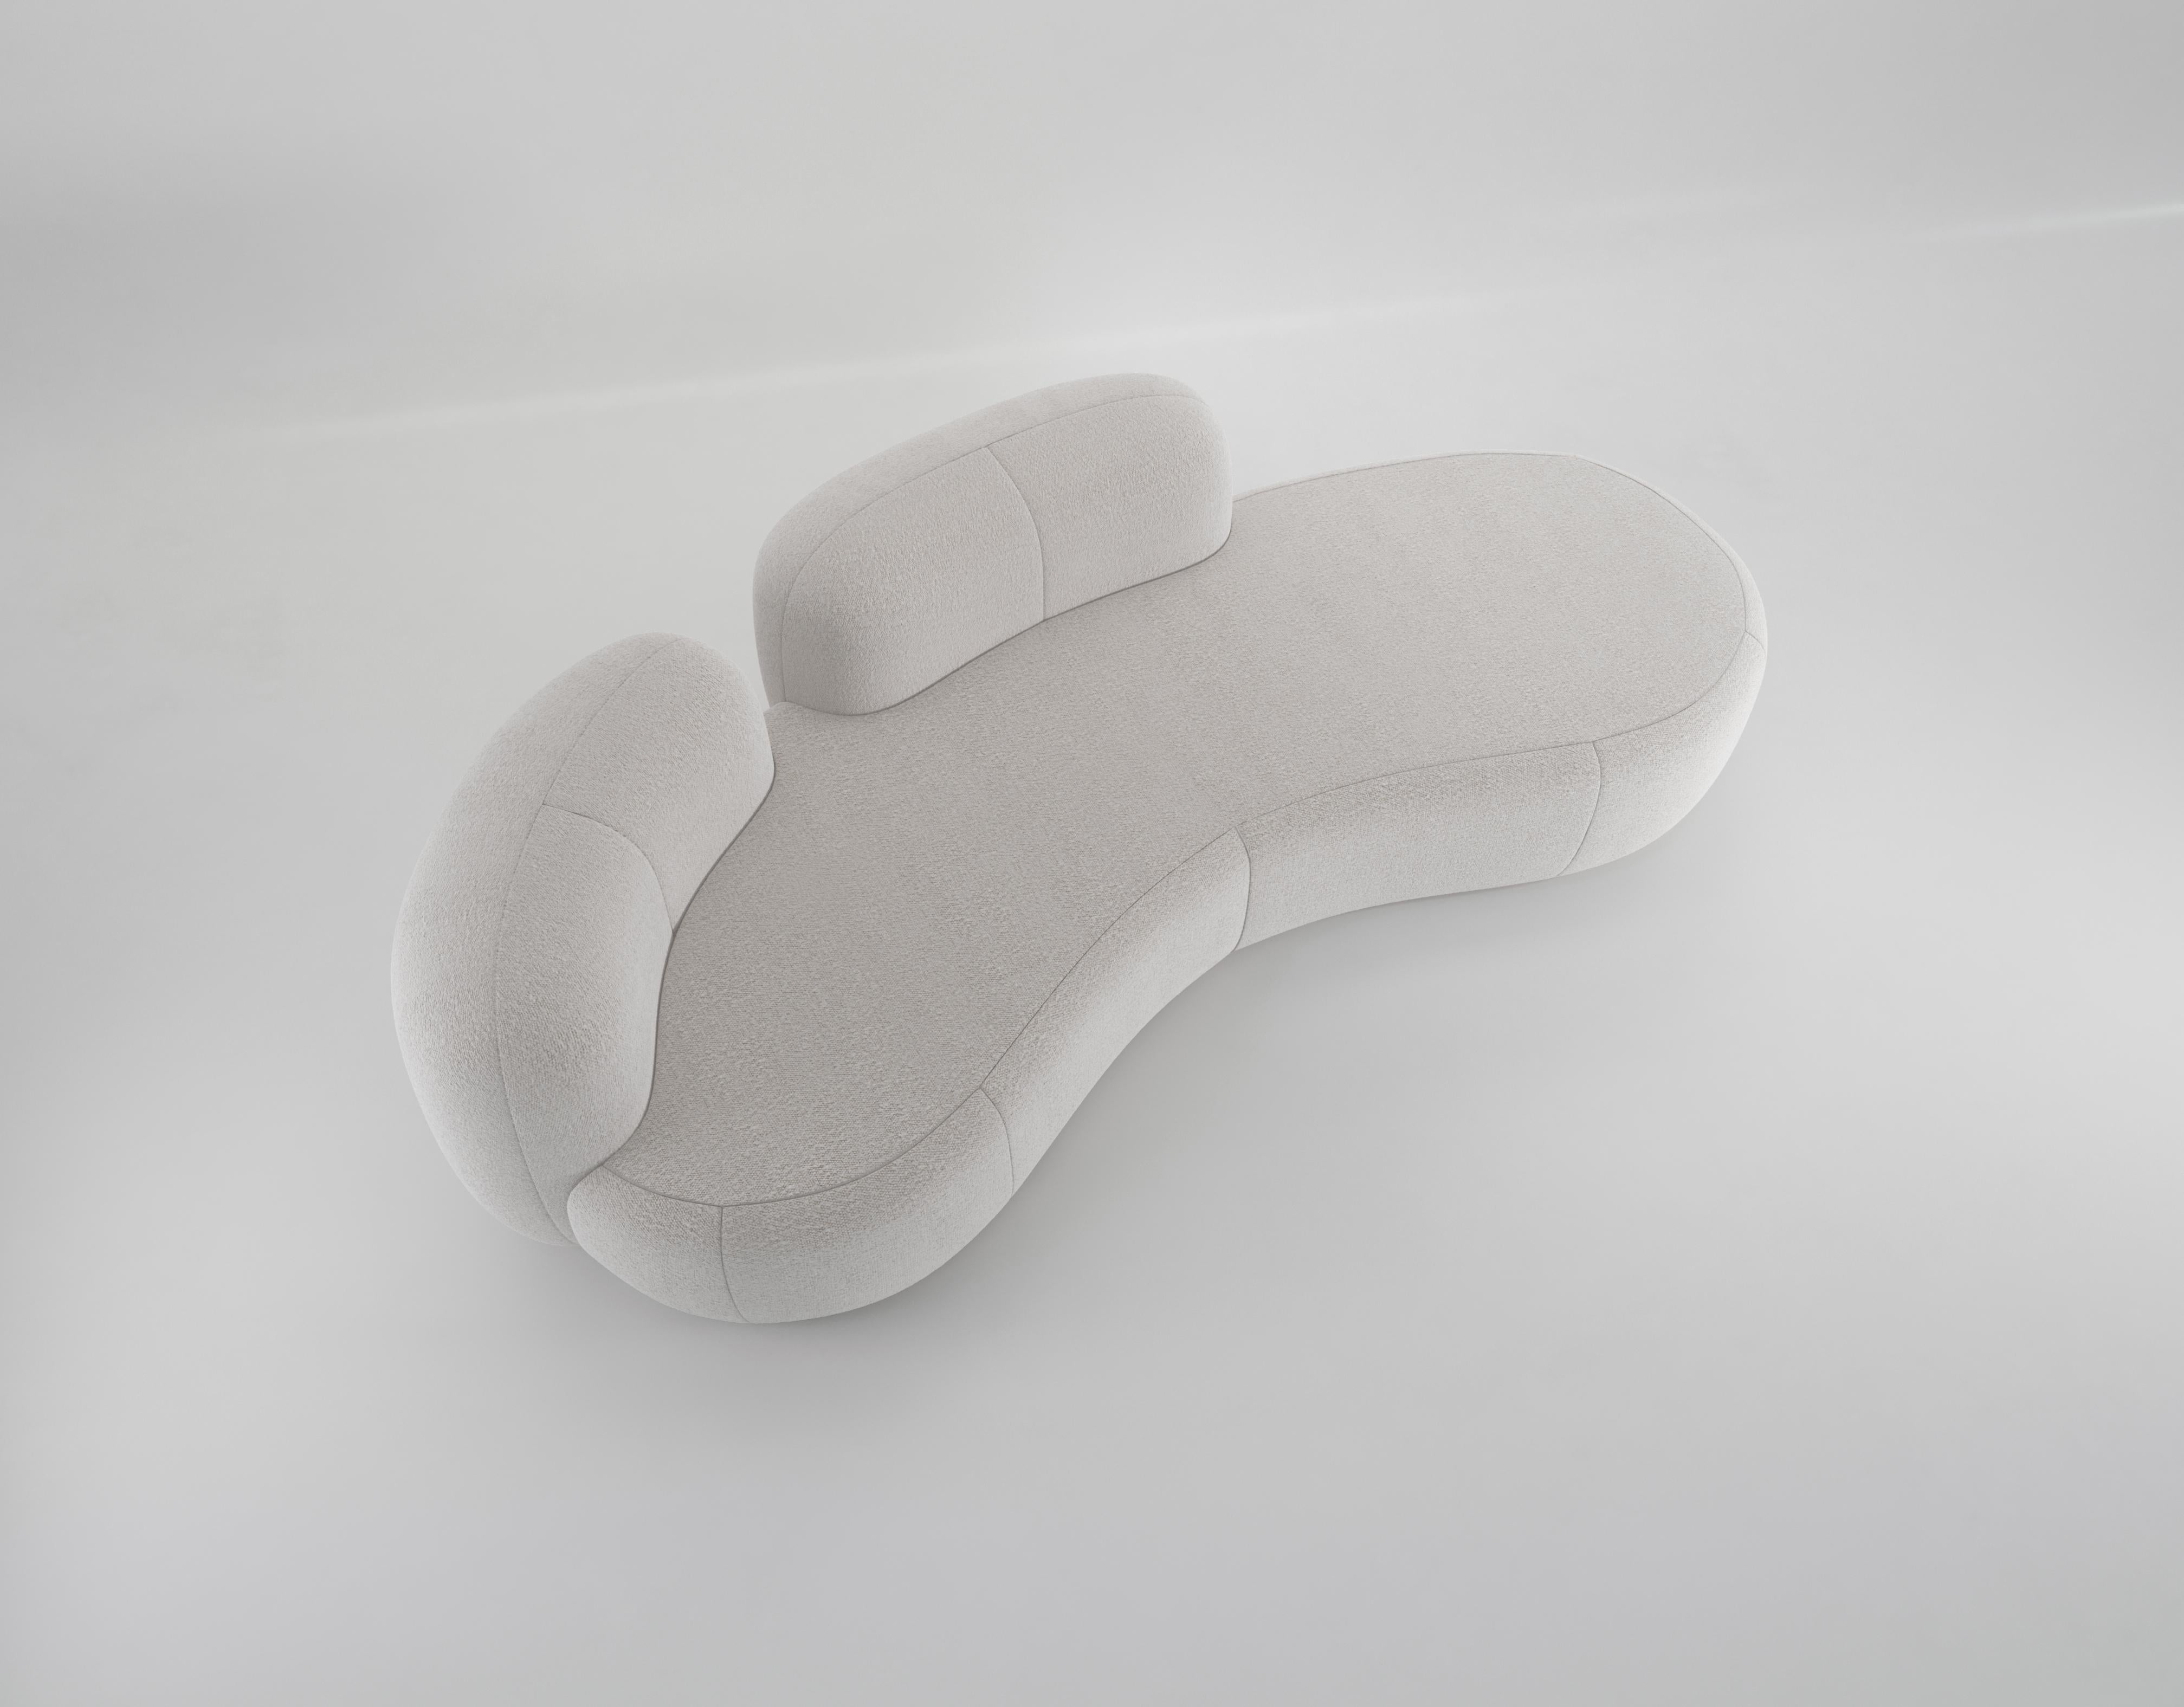 Tateyama XL est la continuation de notre canapé Tateyama, offrant encore plus de confort d'assise dans ce modèle XL. D'une largeur de 3 mètres, le Tateyama XL offre de l'espace à tous les membres de la famille. Les dossiers bas et individuels le